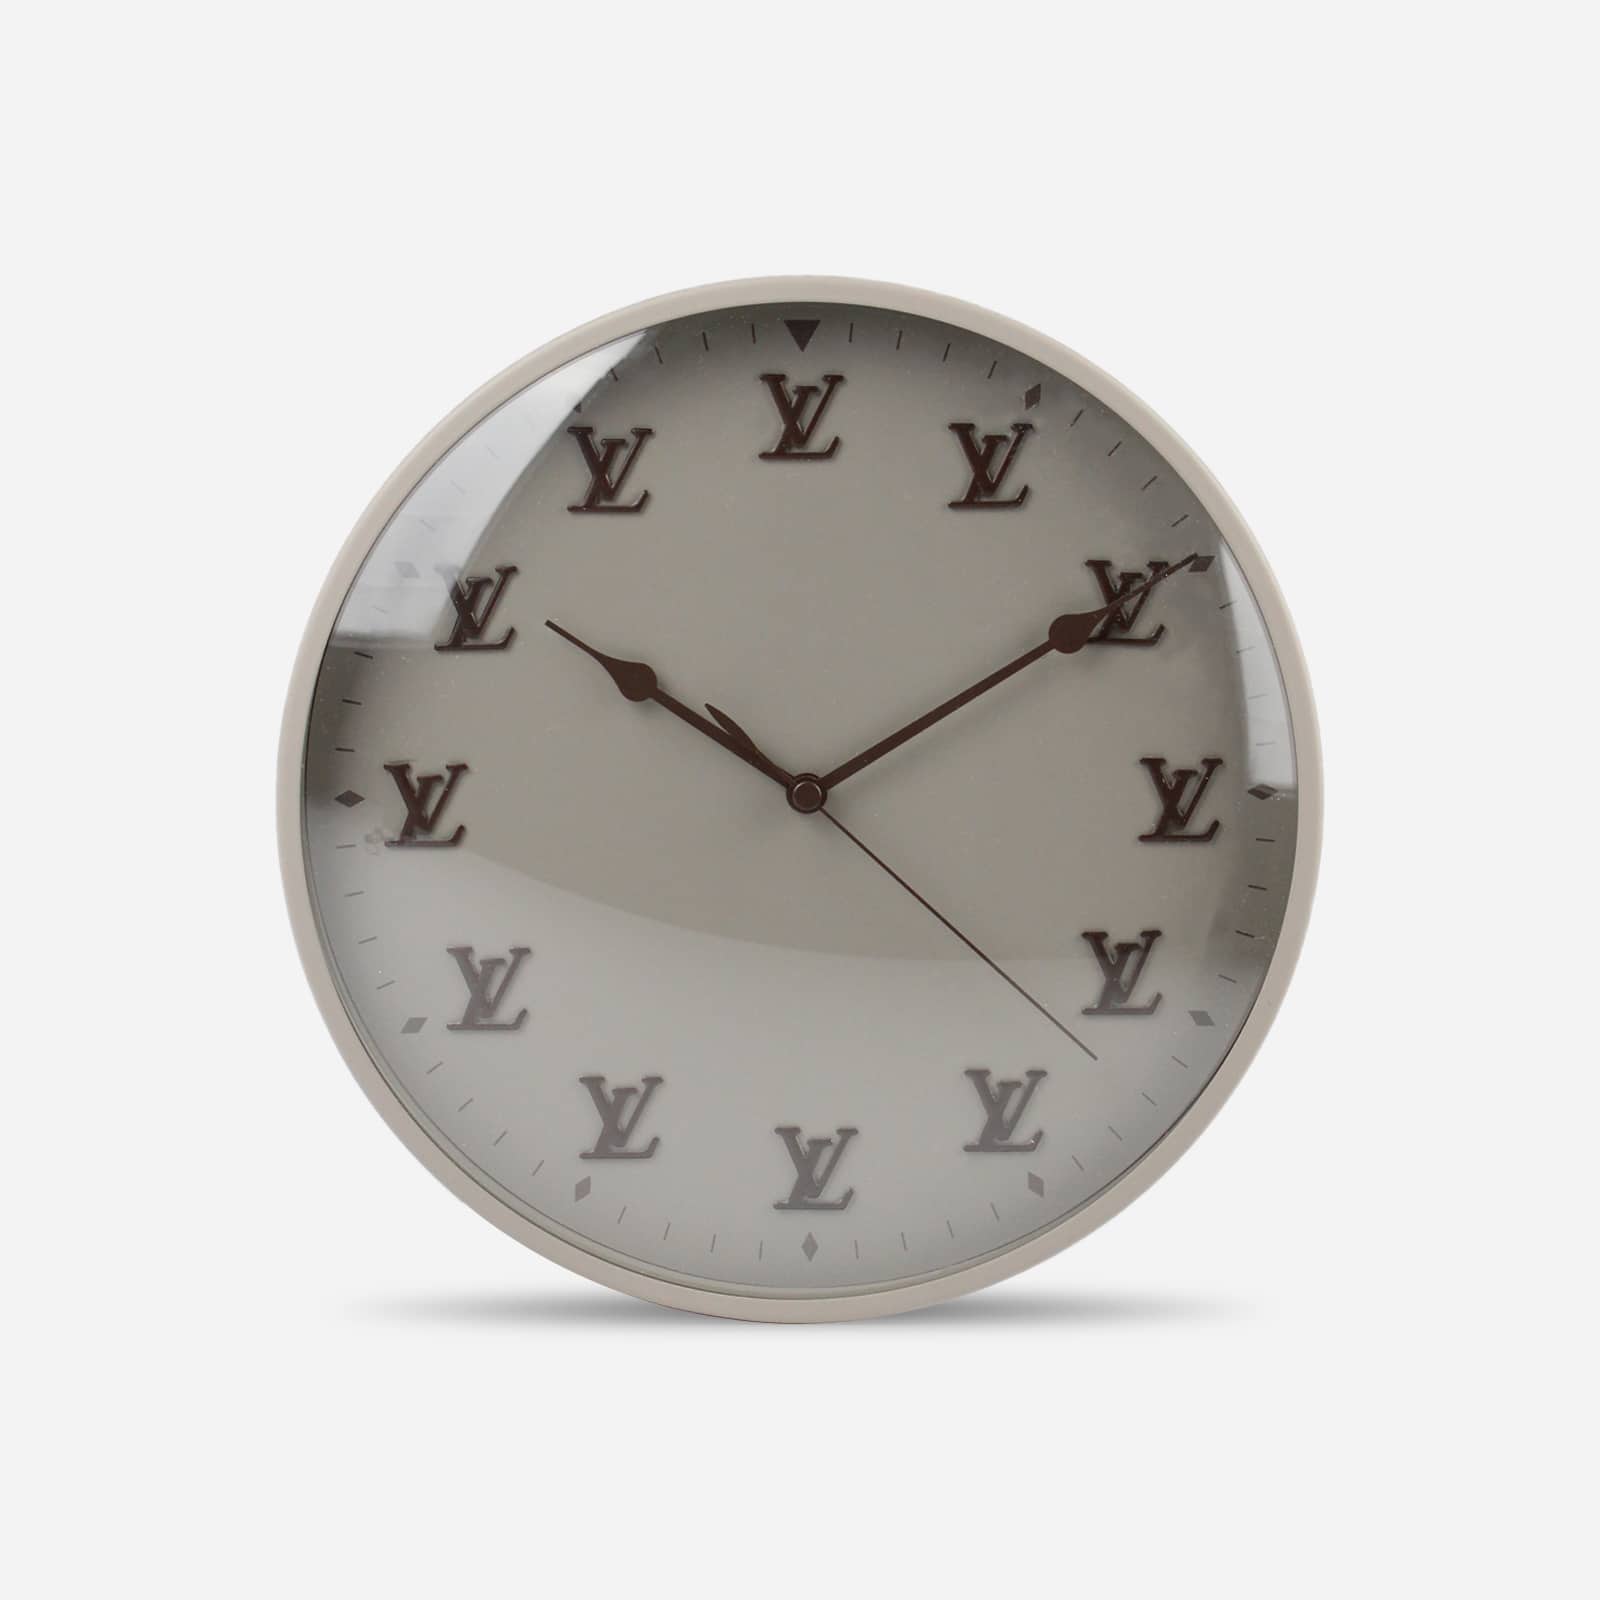 De nieuwe horloges van Louis Vuitton